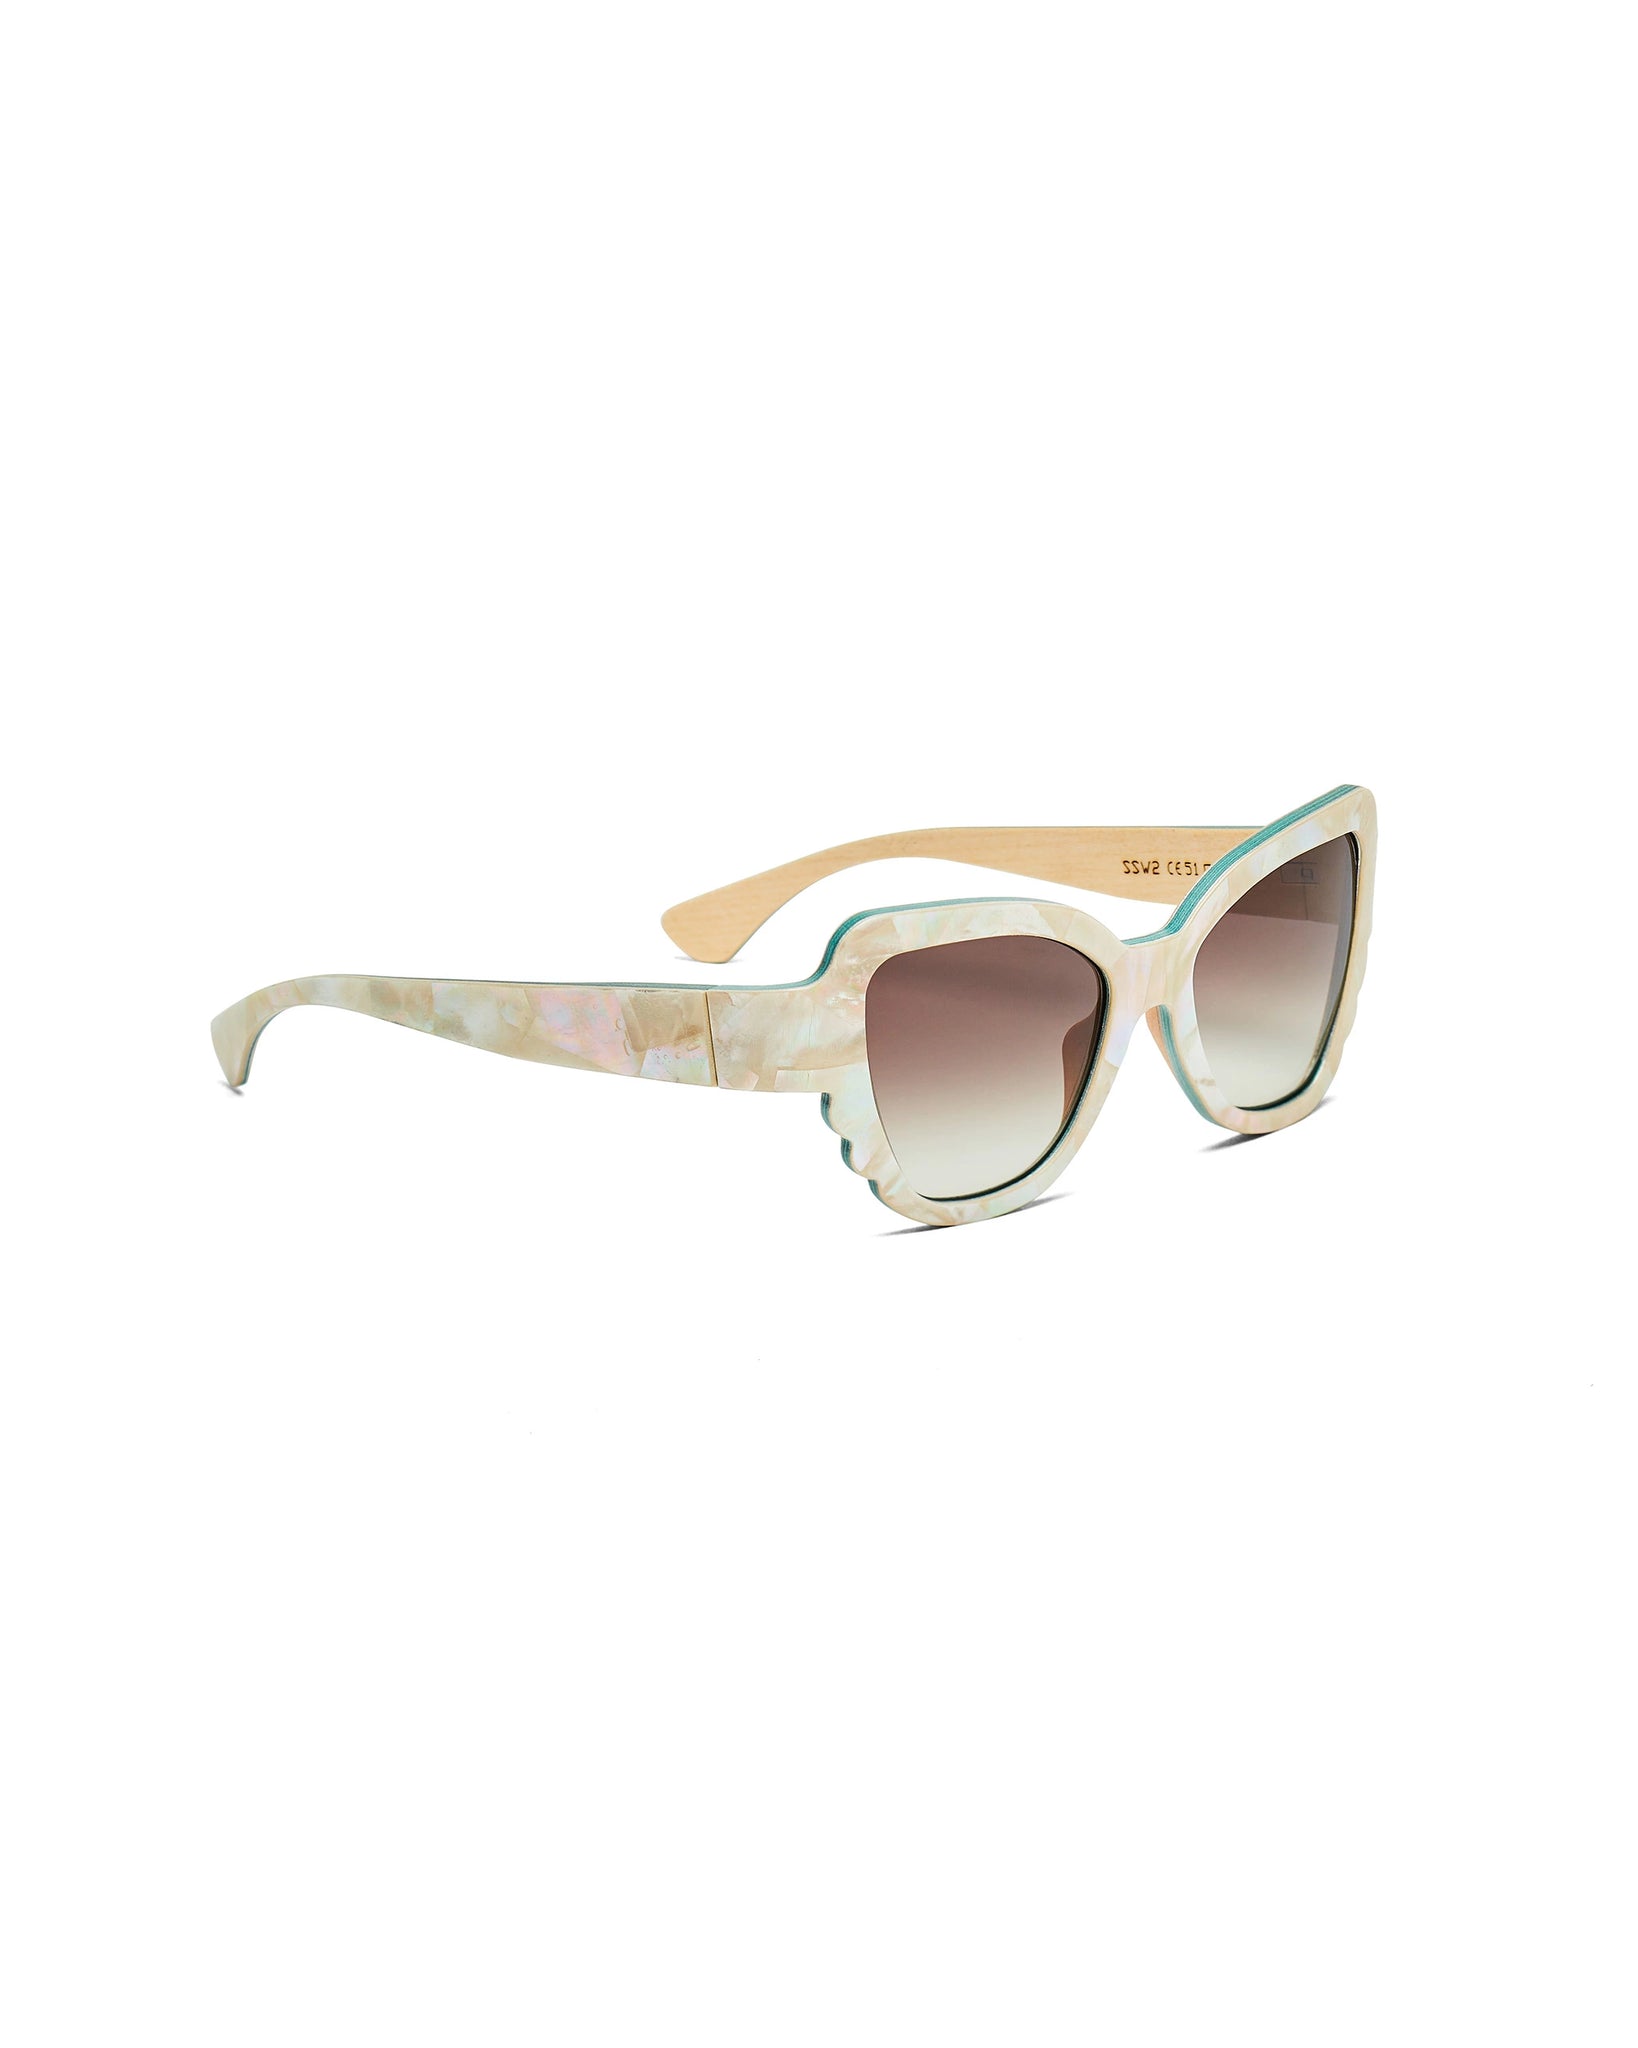 Superlativa® sunglasses model Swarna